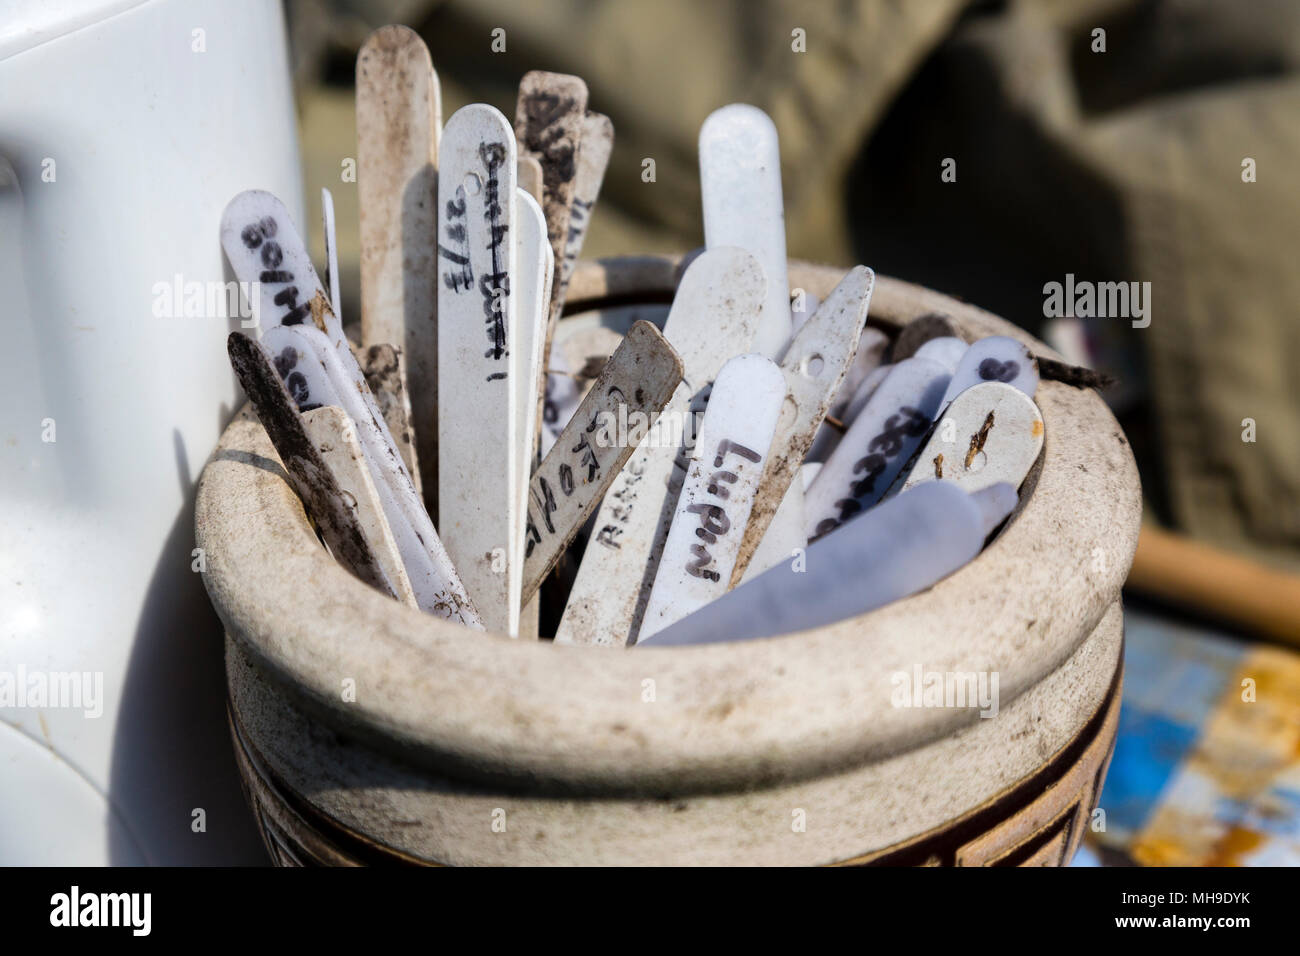 Impianto di etichette e marcatori in un vaso di ceramica Foto Stock